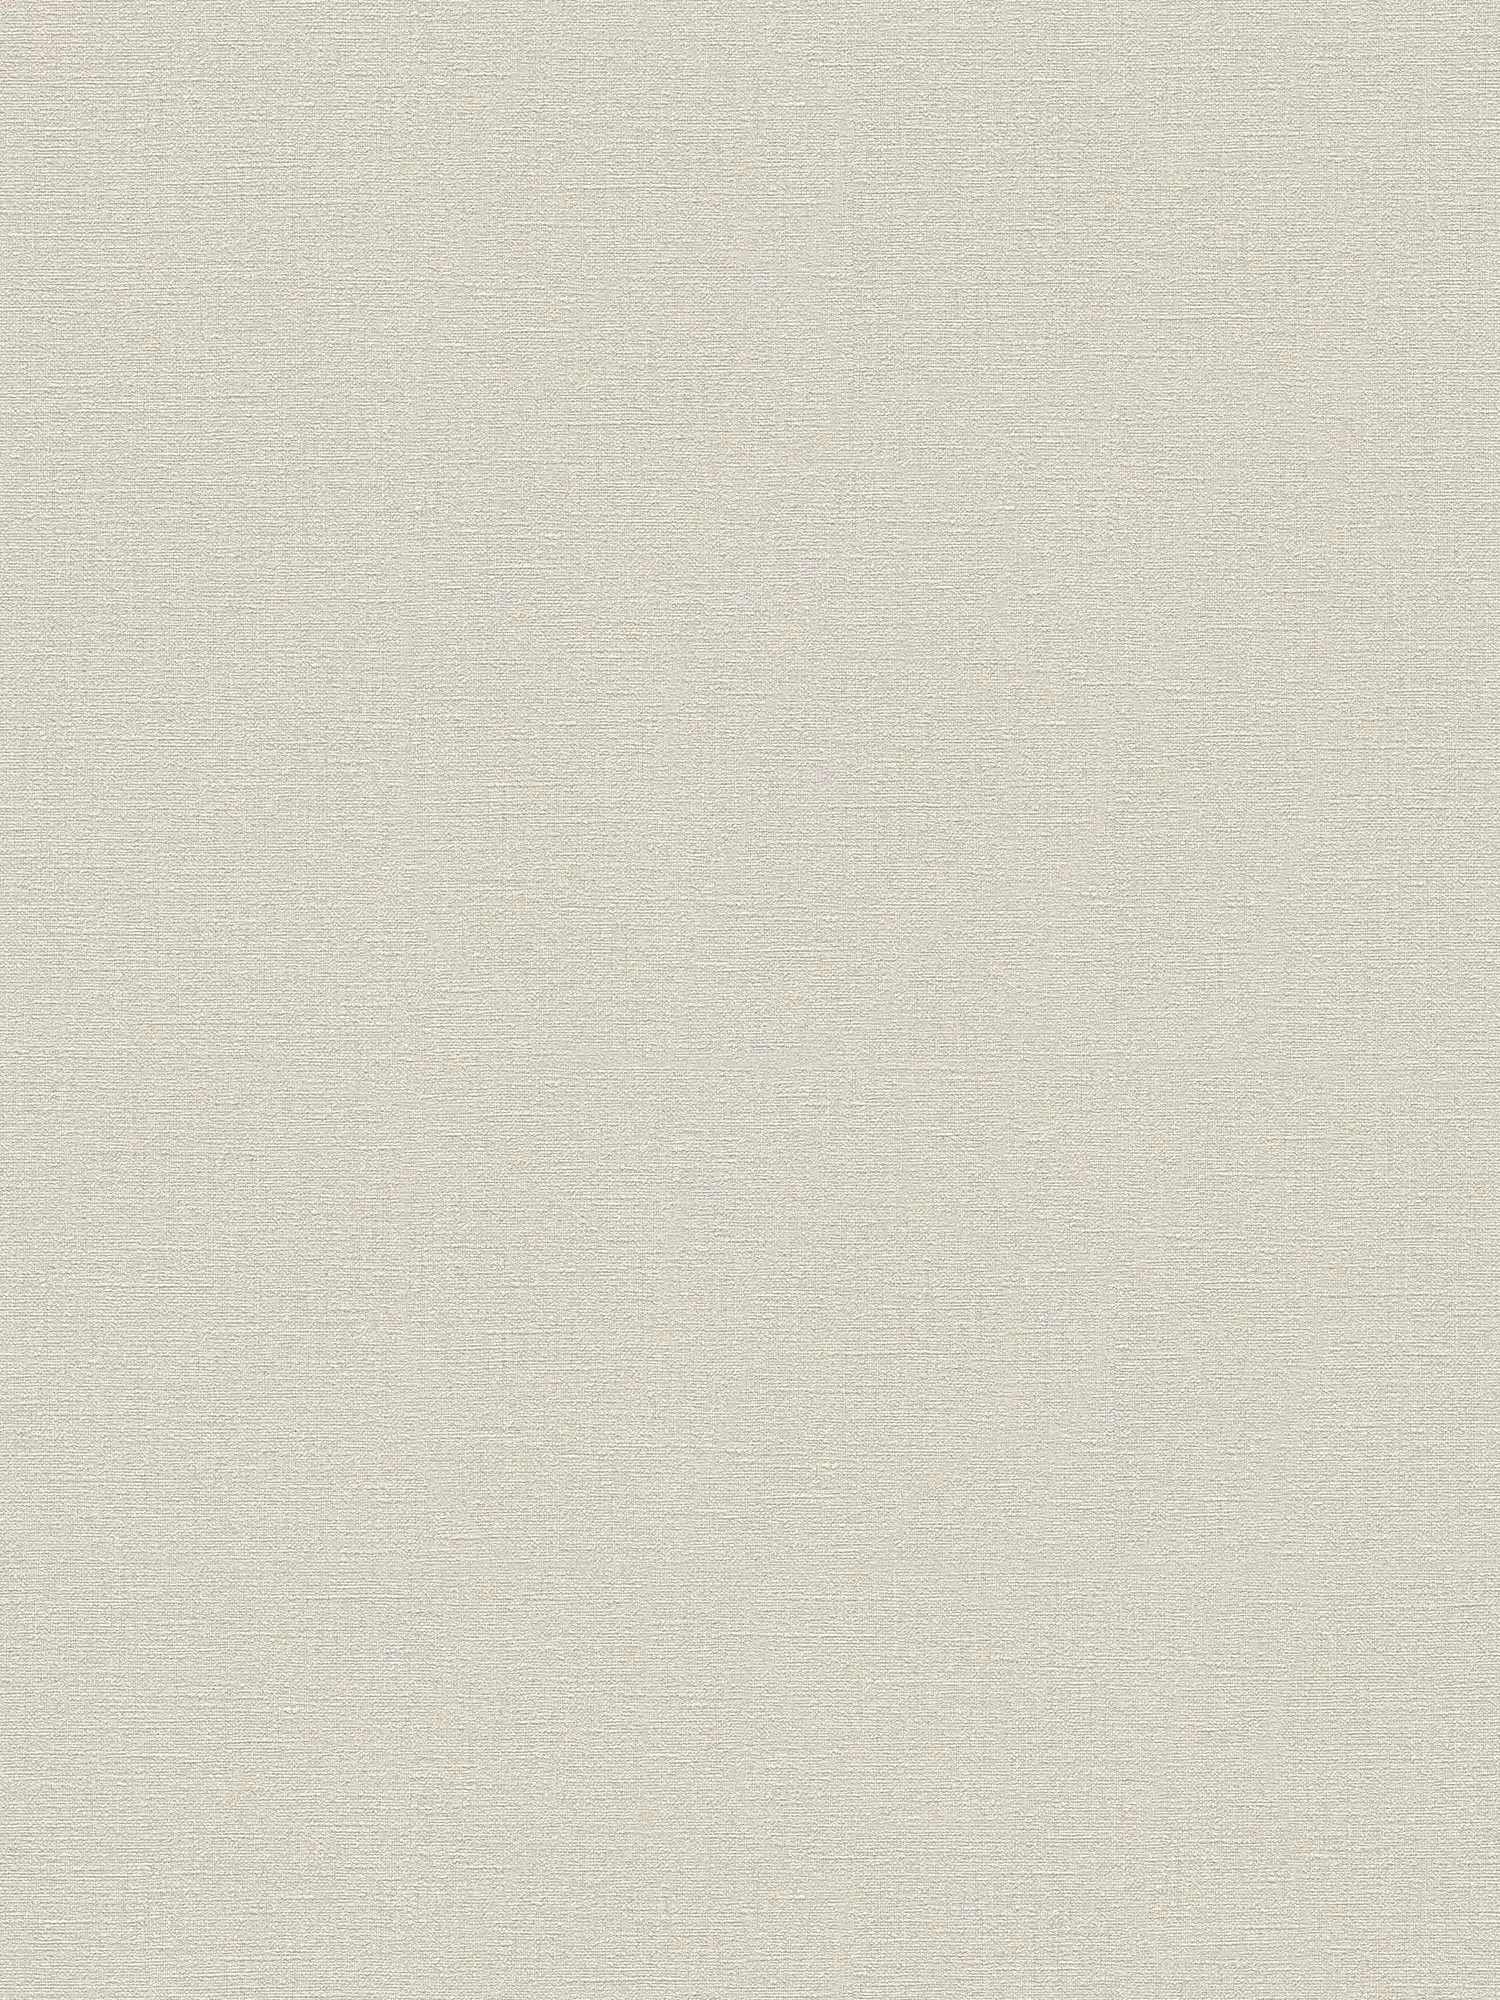 Cream beige wallpaper plain & matte with textured pattern
